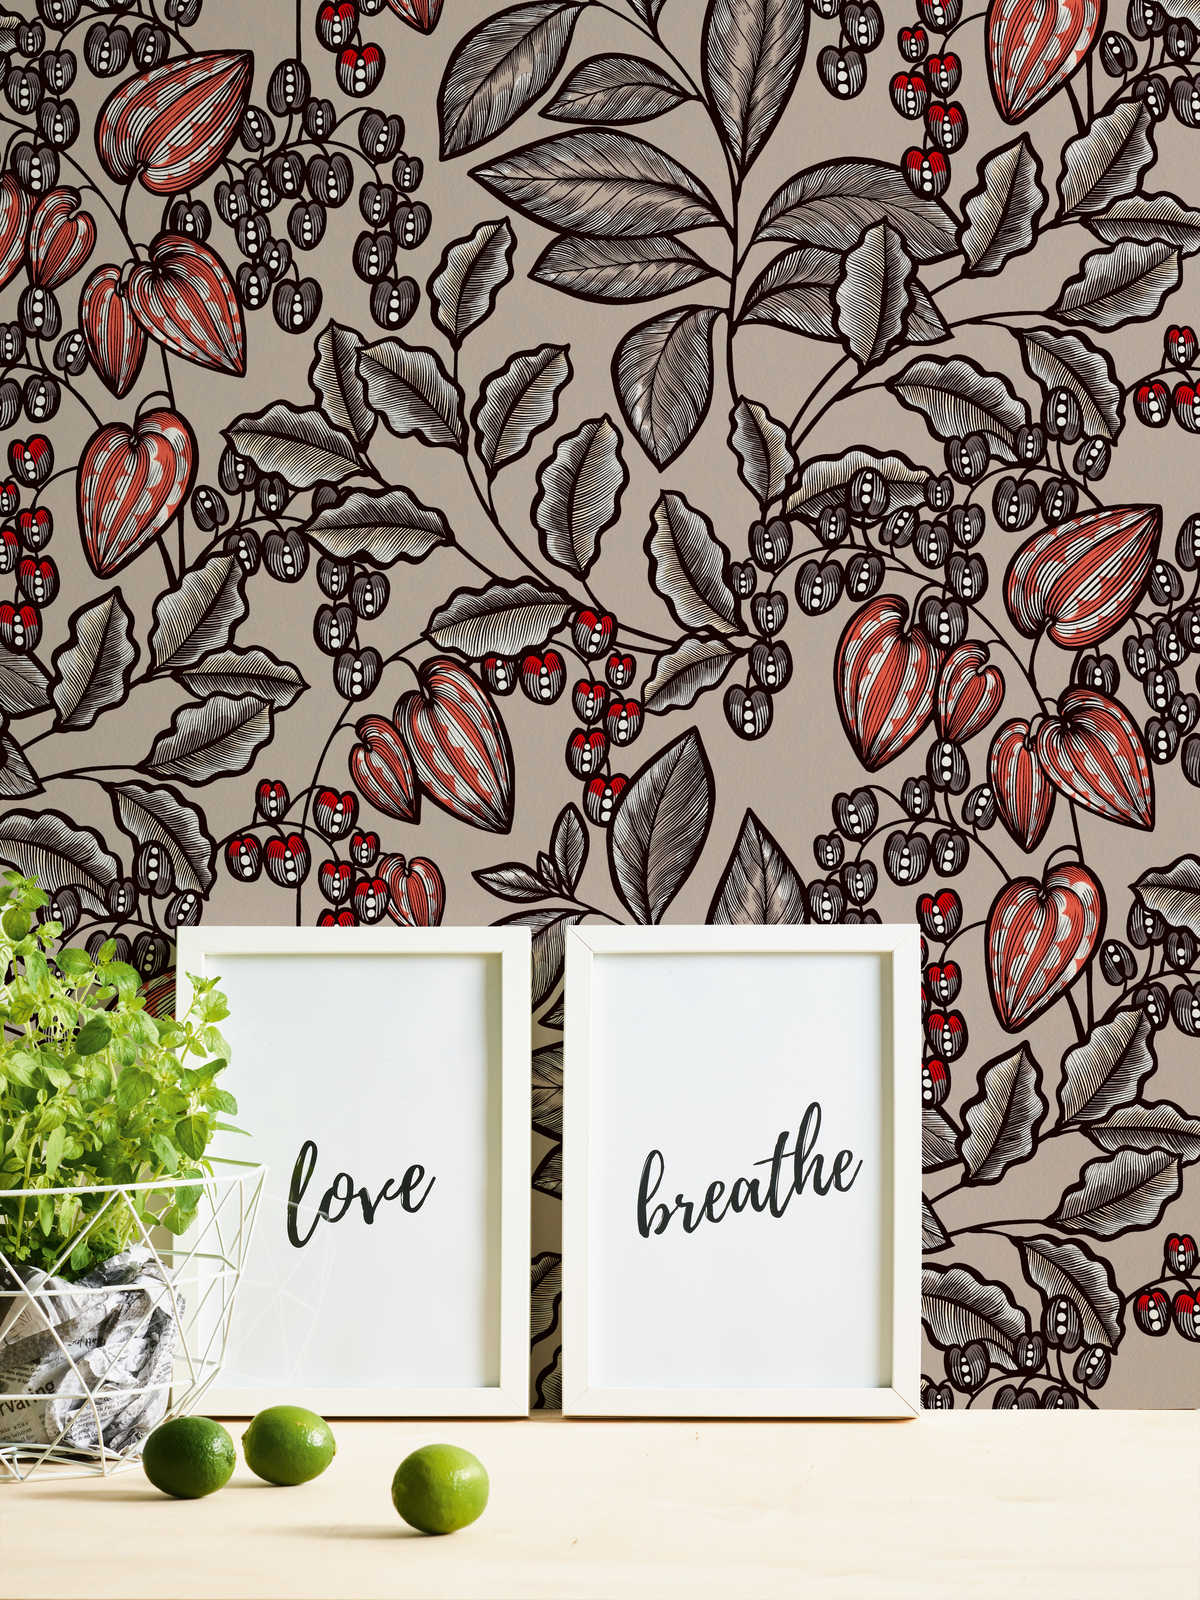             Wallpaper Greige modern flowers & leaves design - brown, grey, red
        